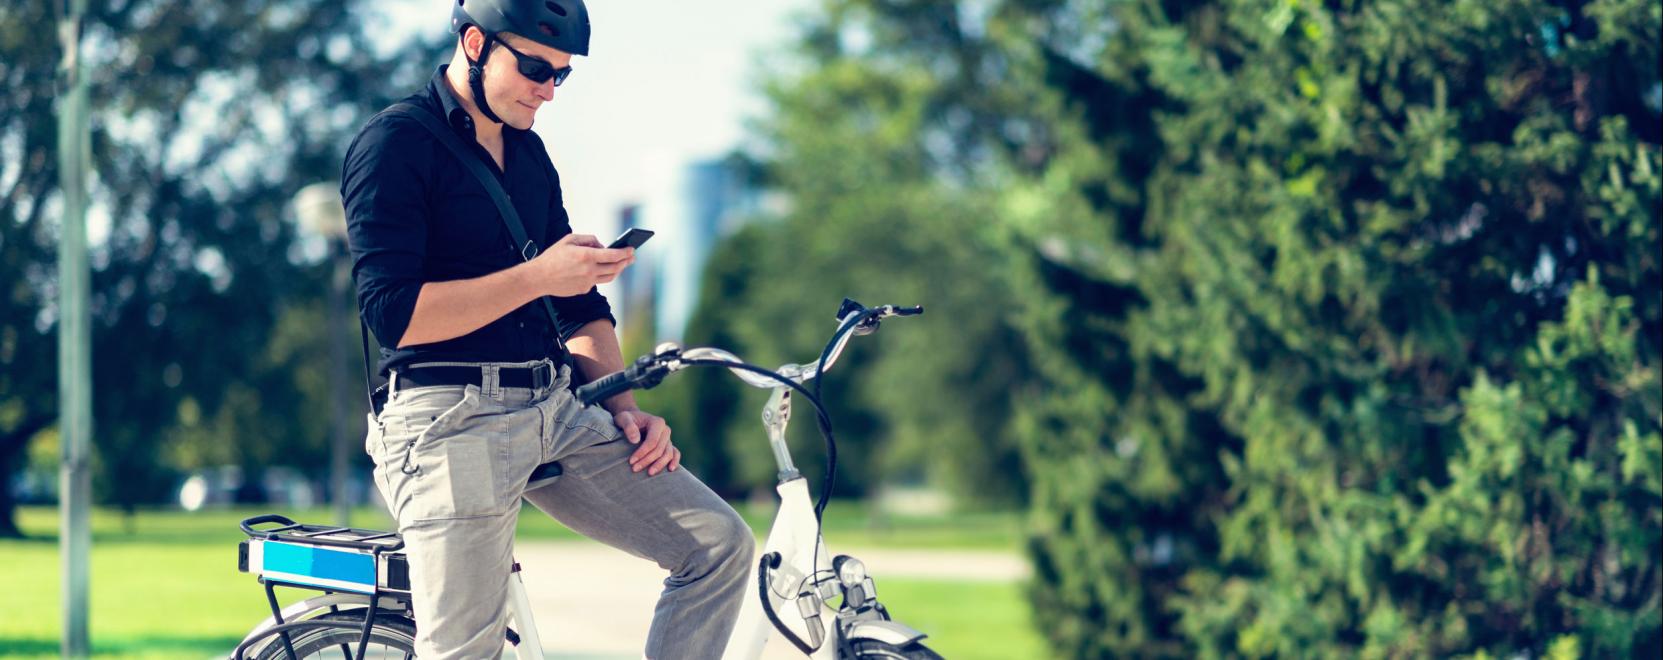 Újabb okossisakkal lehet biztonságosabb a biciklizés